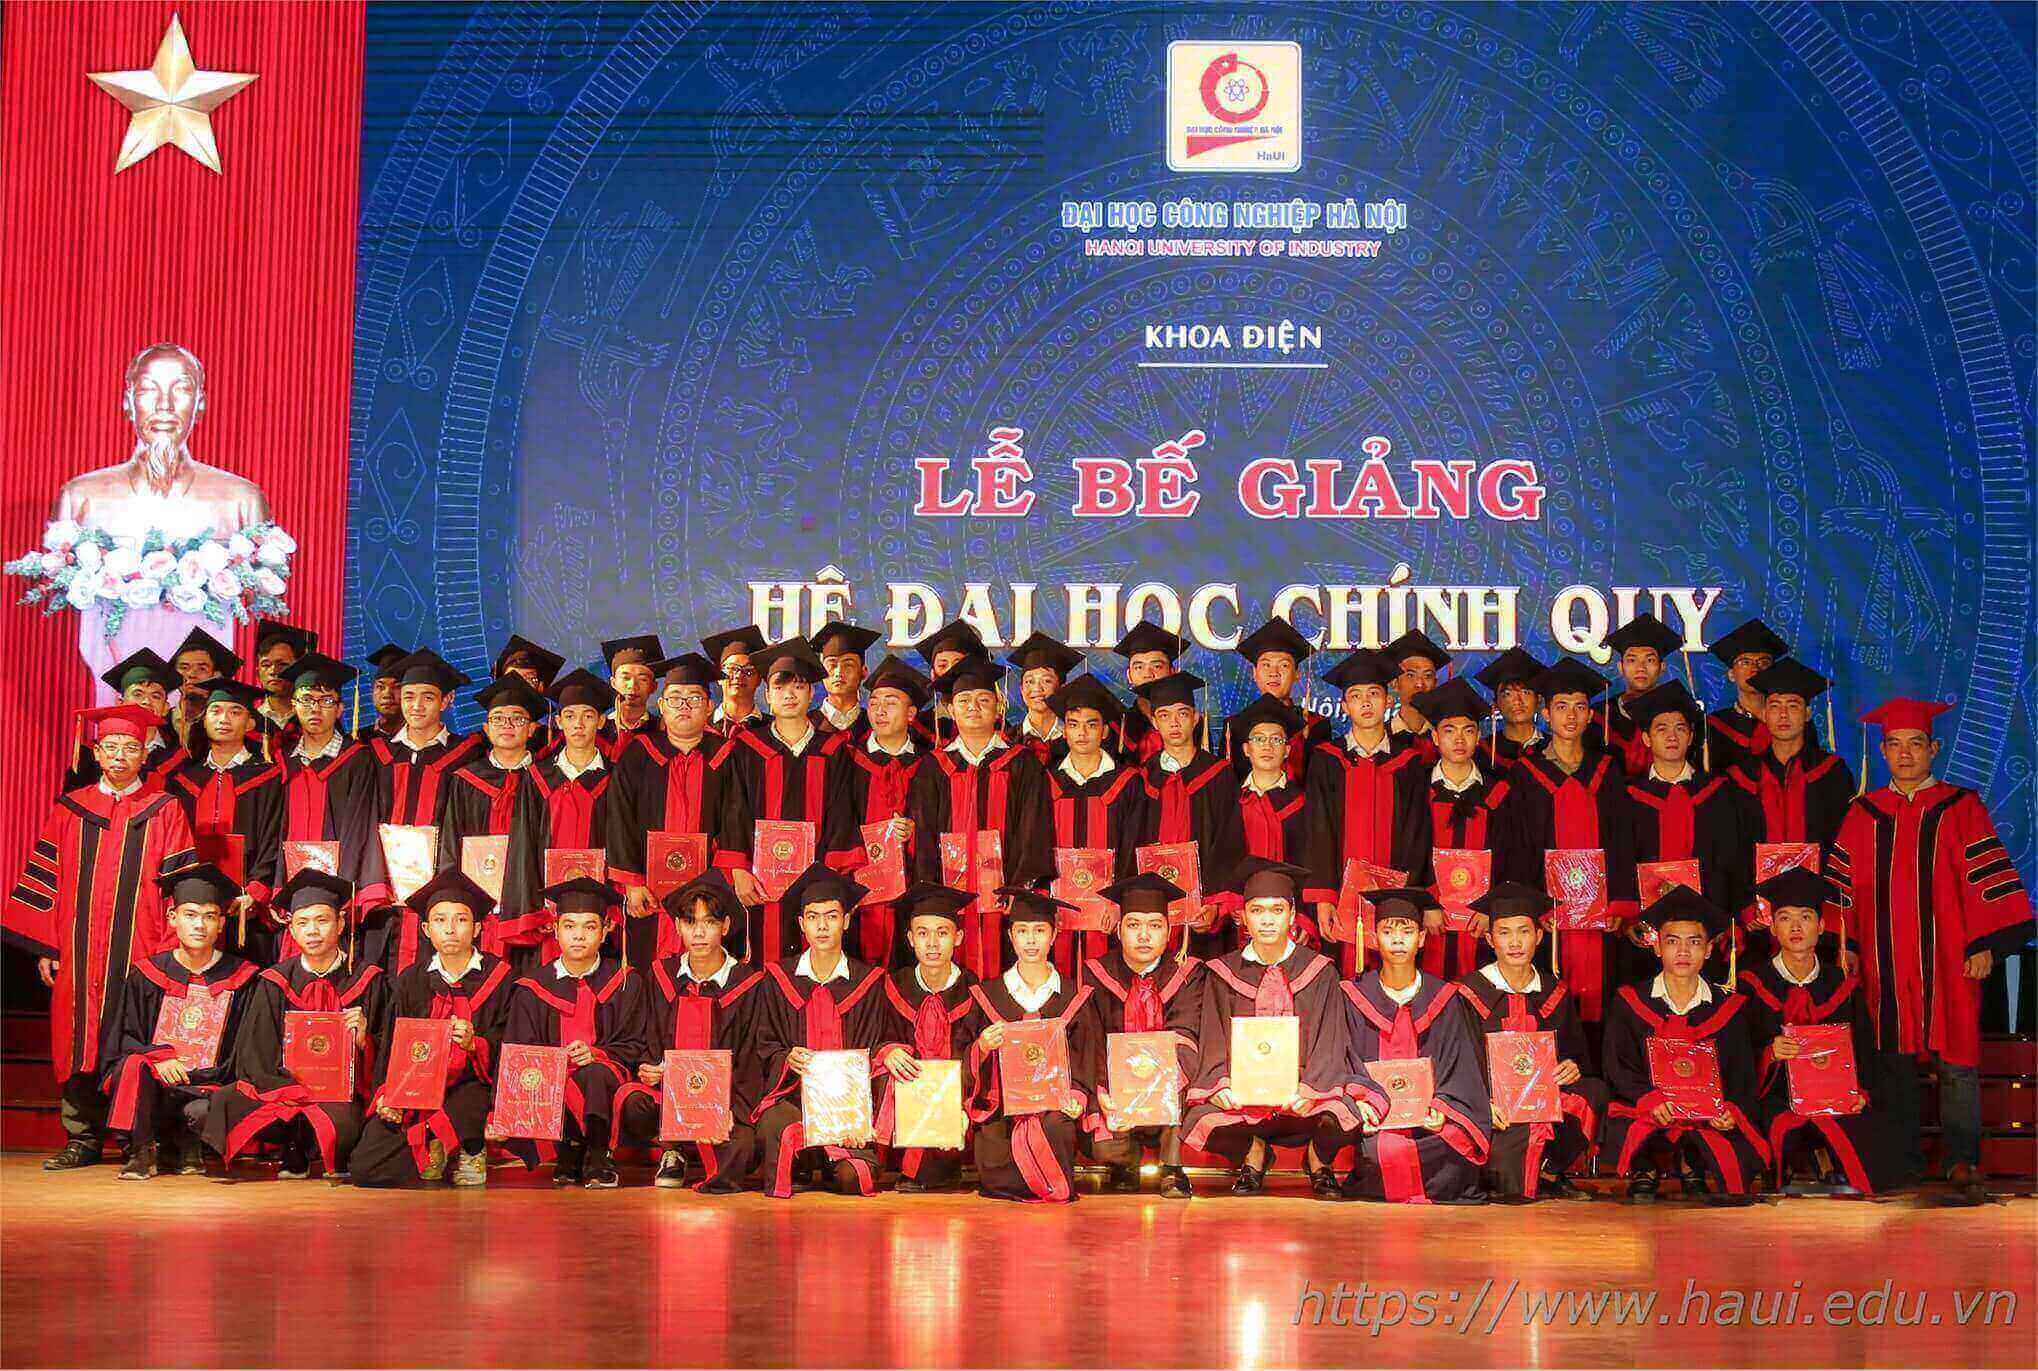 Đại học Công nghiệp Hà Nội hân hoan trong ngày nhận bằng tốt nghiệp